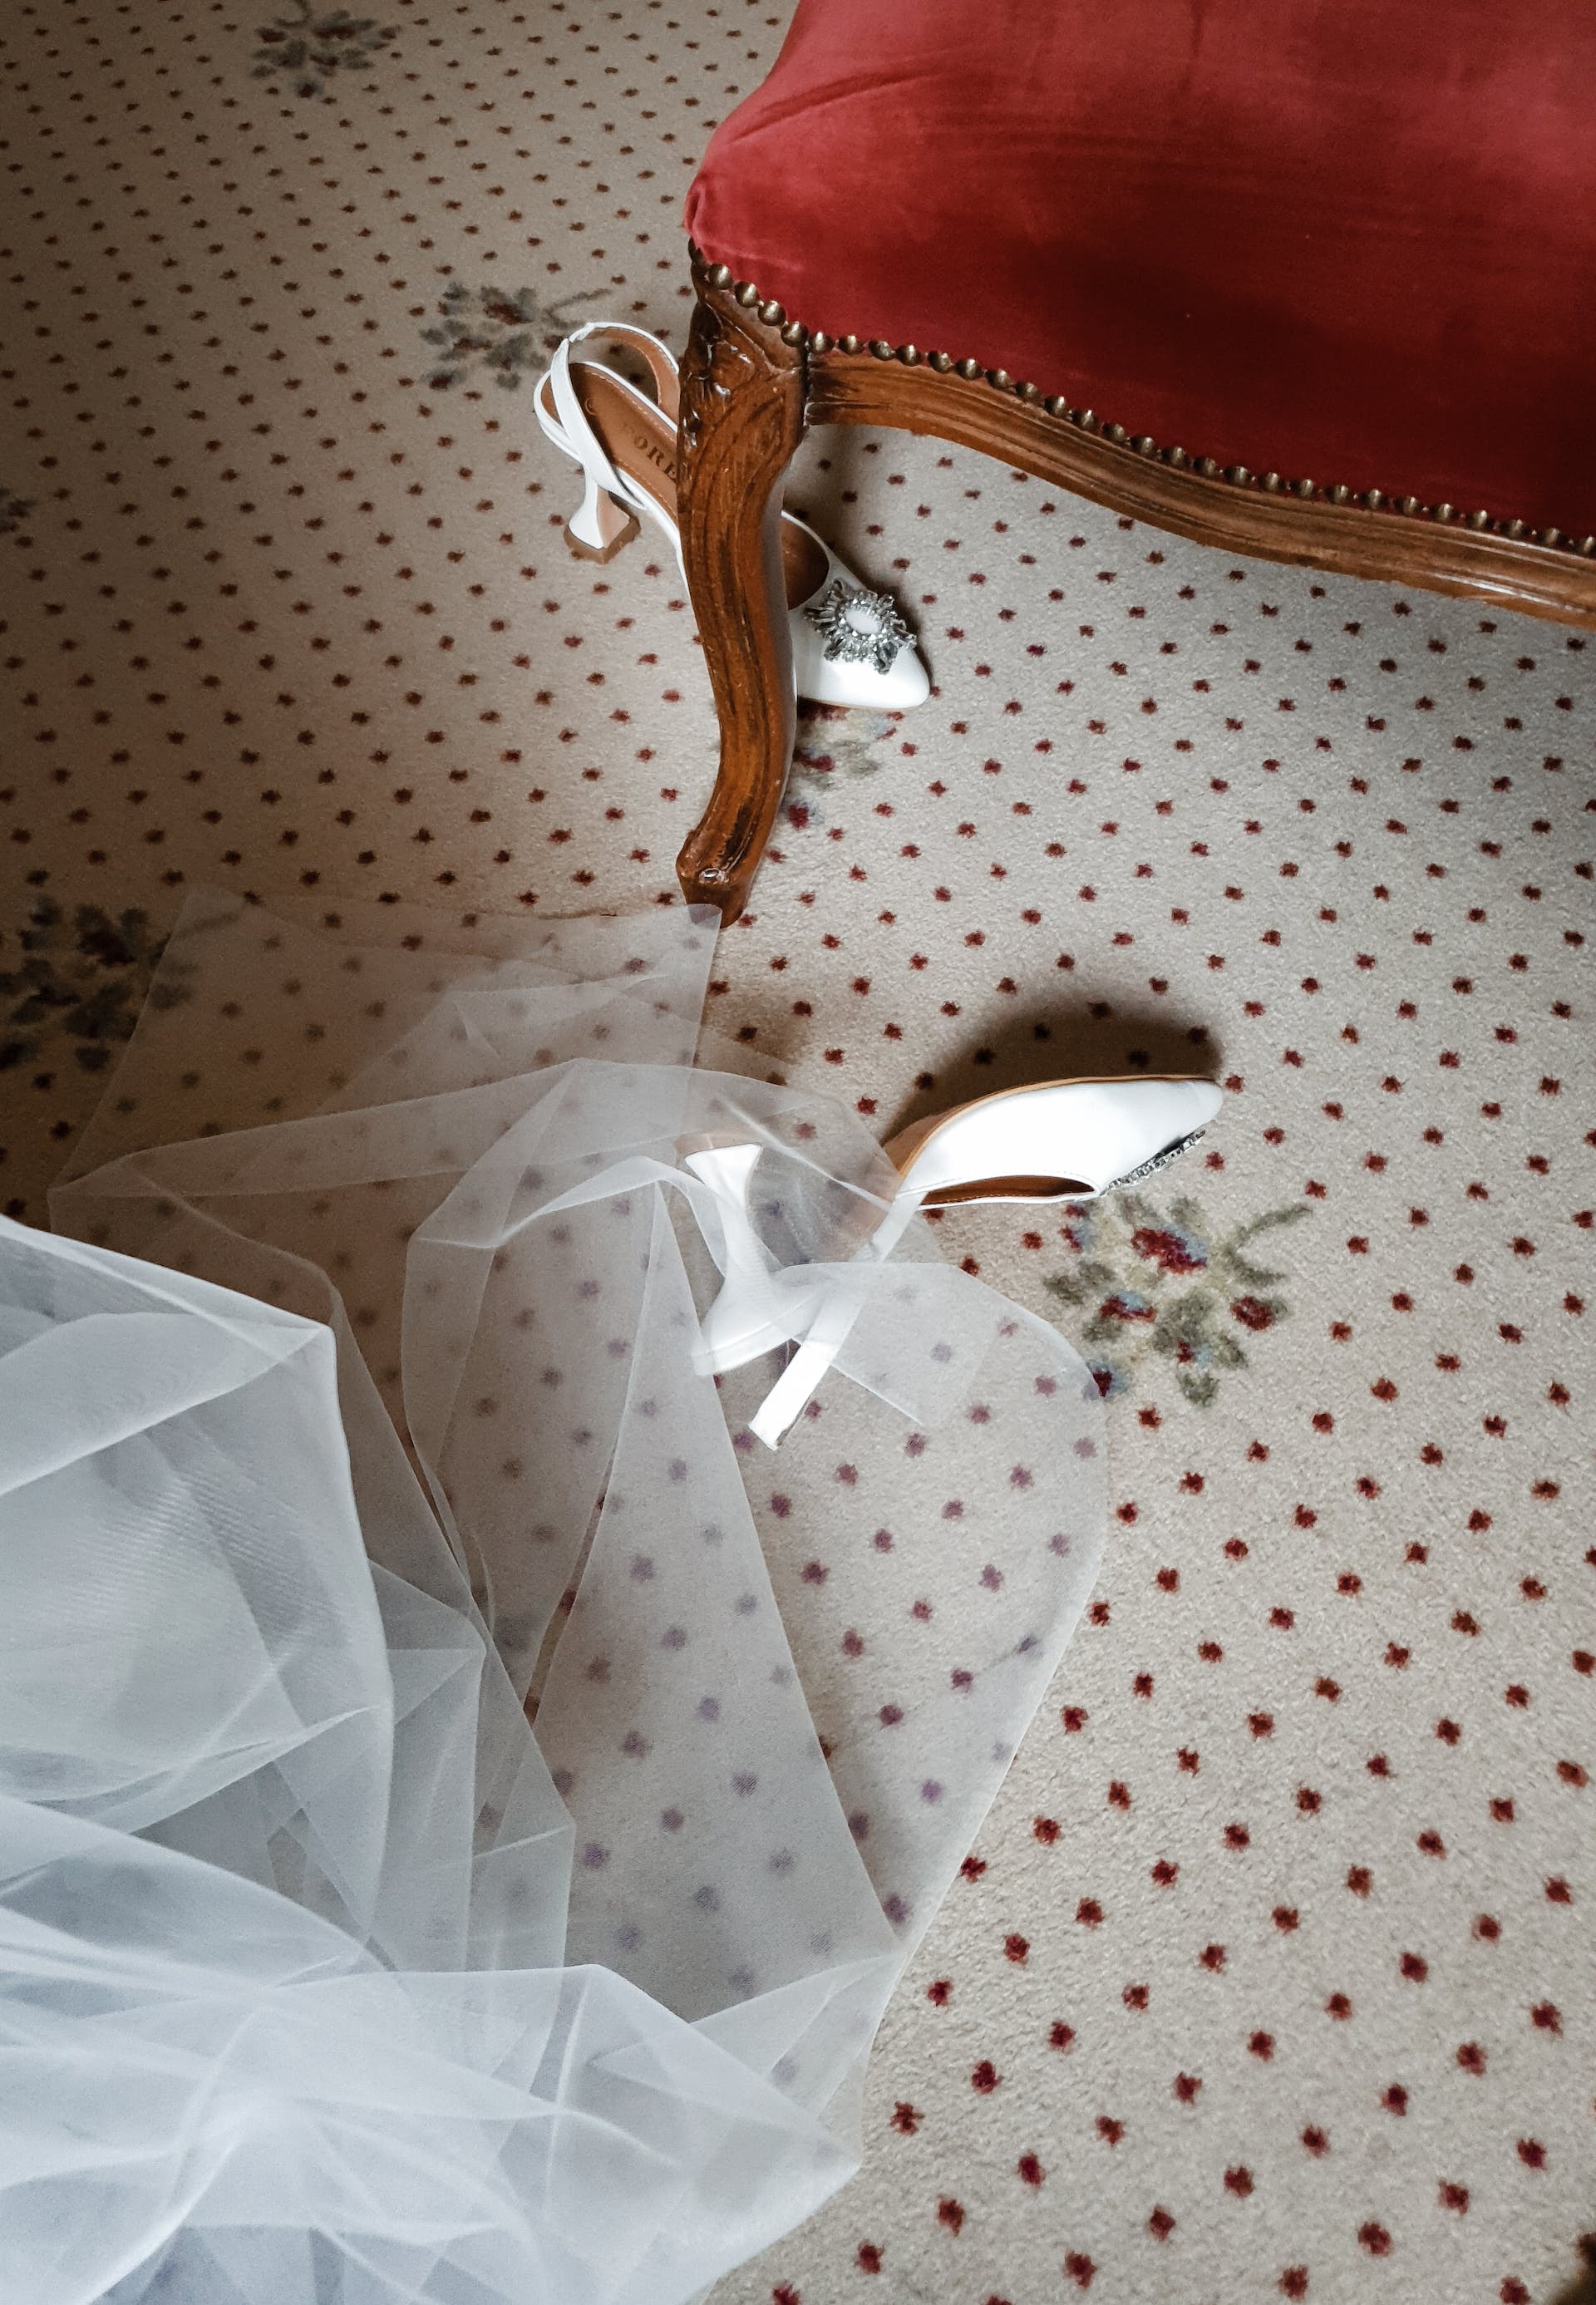 Hochzeitskleid und Schuhe auf dem Boden | Quelle: Pexels